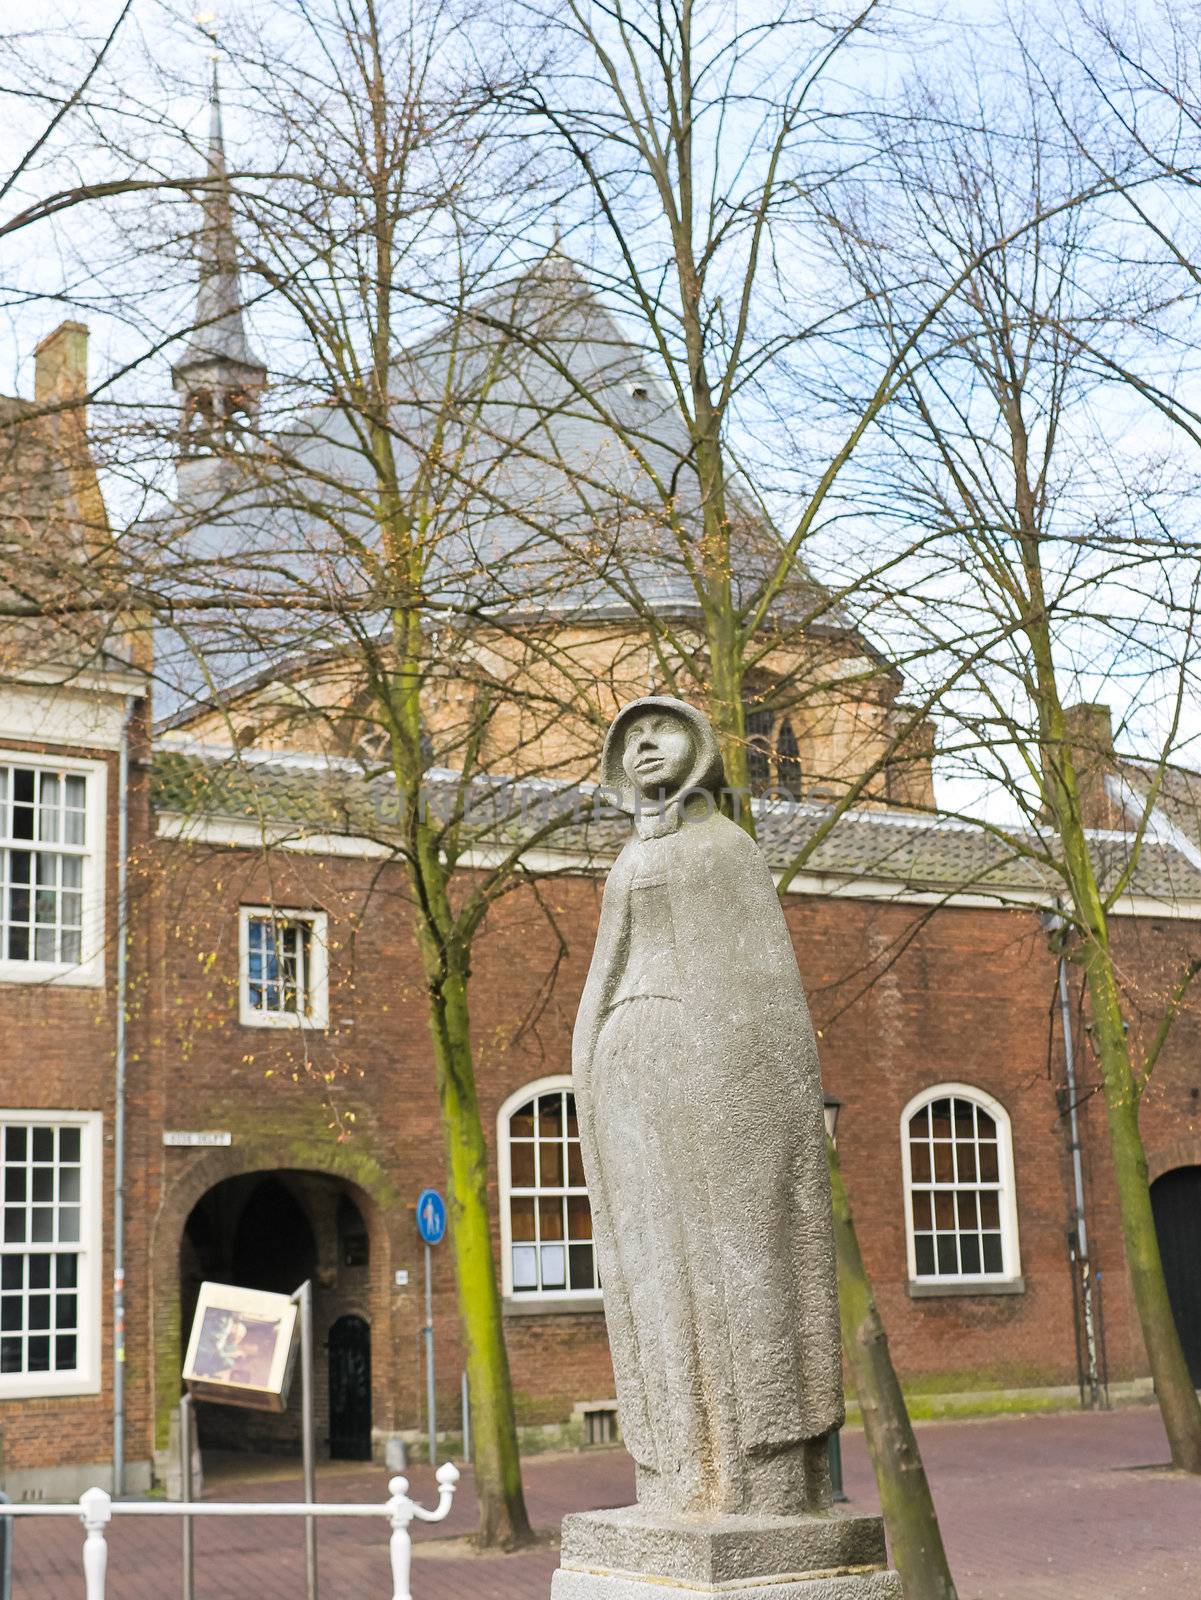 Statue of a girl (Geertruyt van Oosten). Delft. Netherlands by NickNick